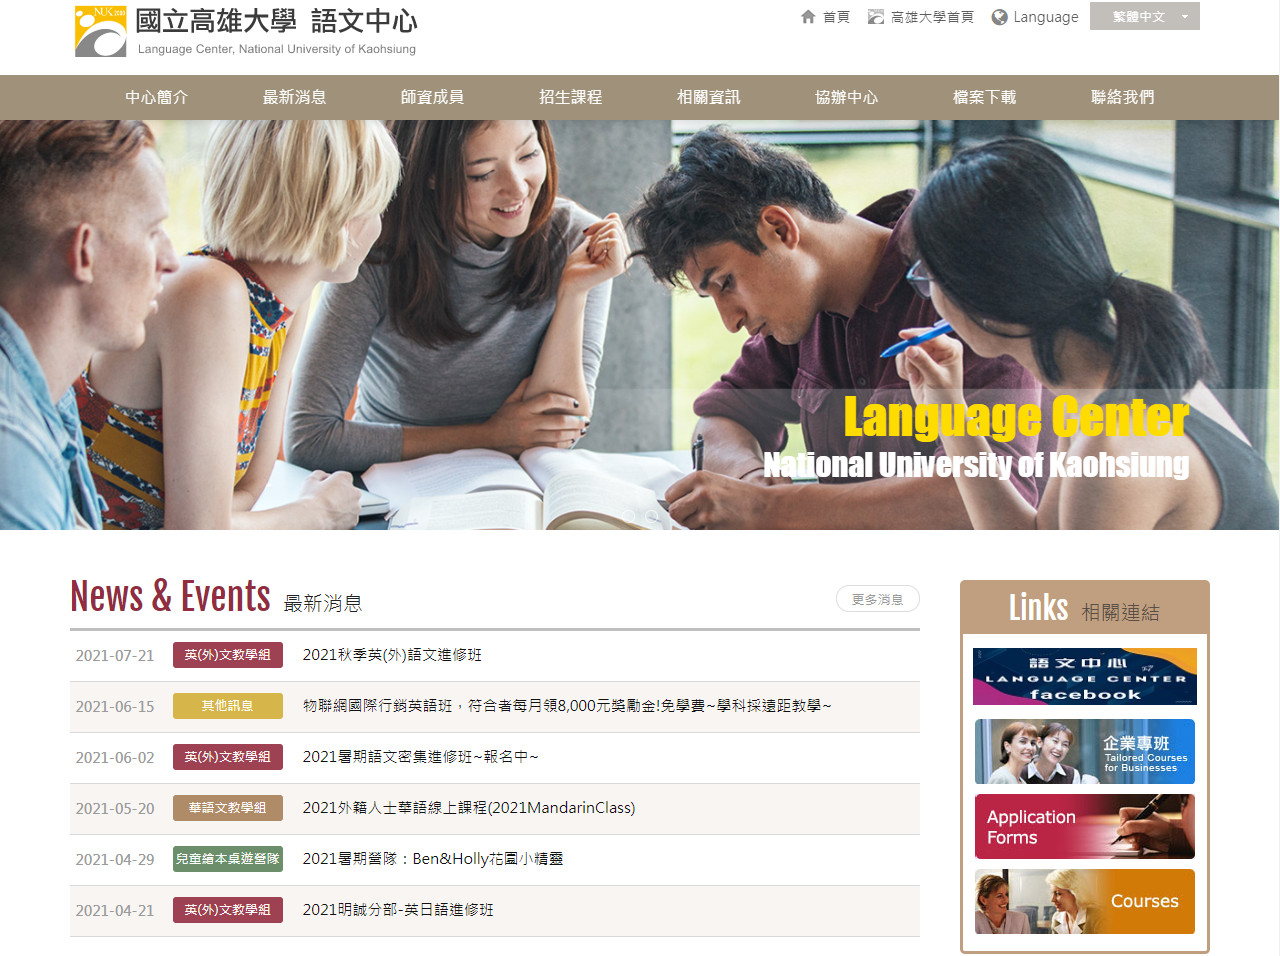 國立高雄大學語文中心 大學中心RWD響應式網站設計
網站設計